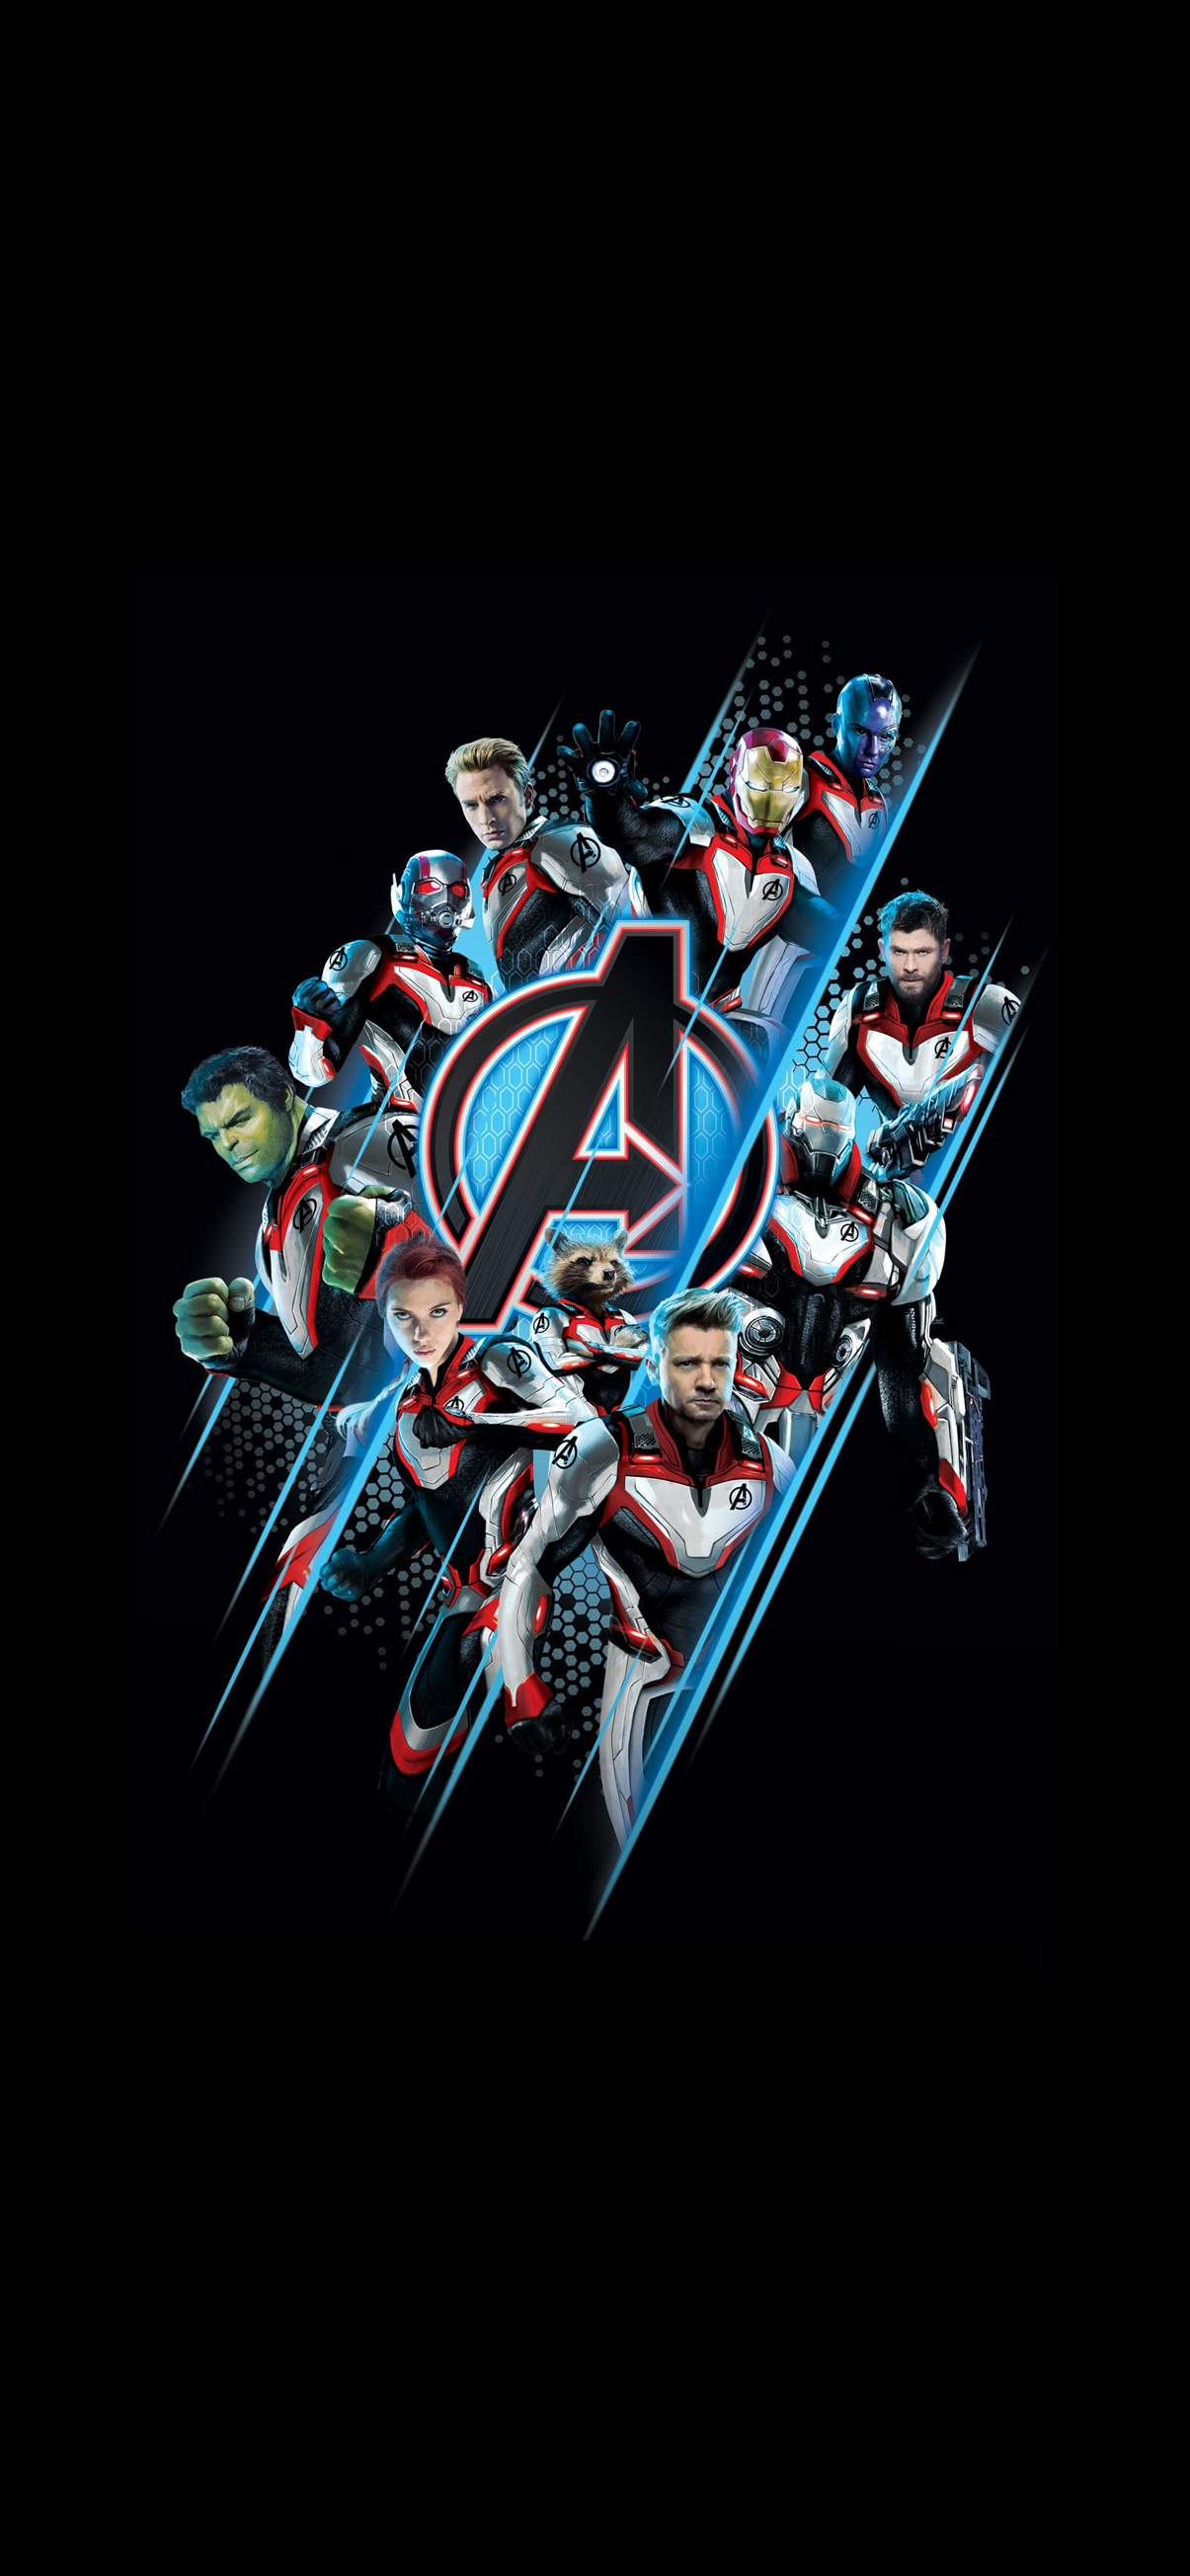 avengers wallpaper für handys,erfundener charakter,t shirt,superheld,grafikdesign,poster